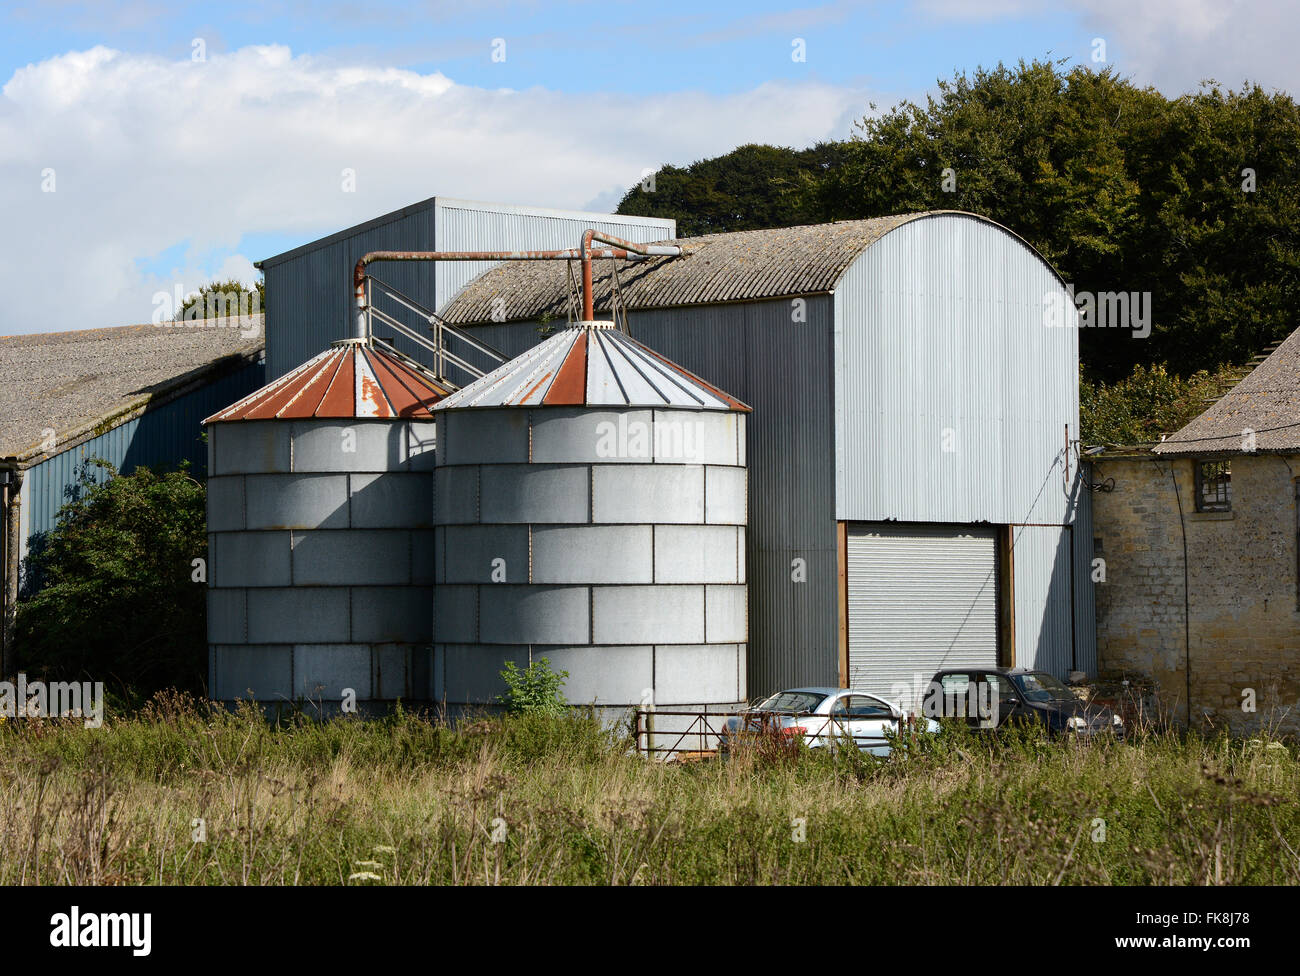 Les silos de stockage des grains à la ferme dans le Wiltshire, Angleterre Banque D'Images